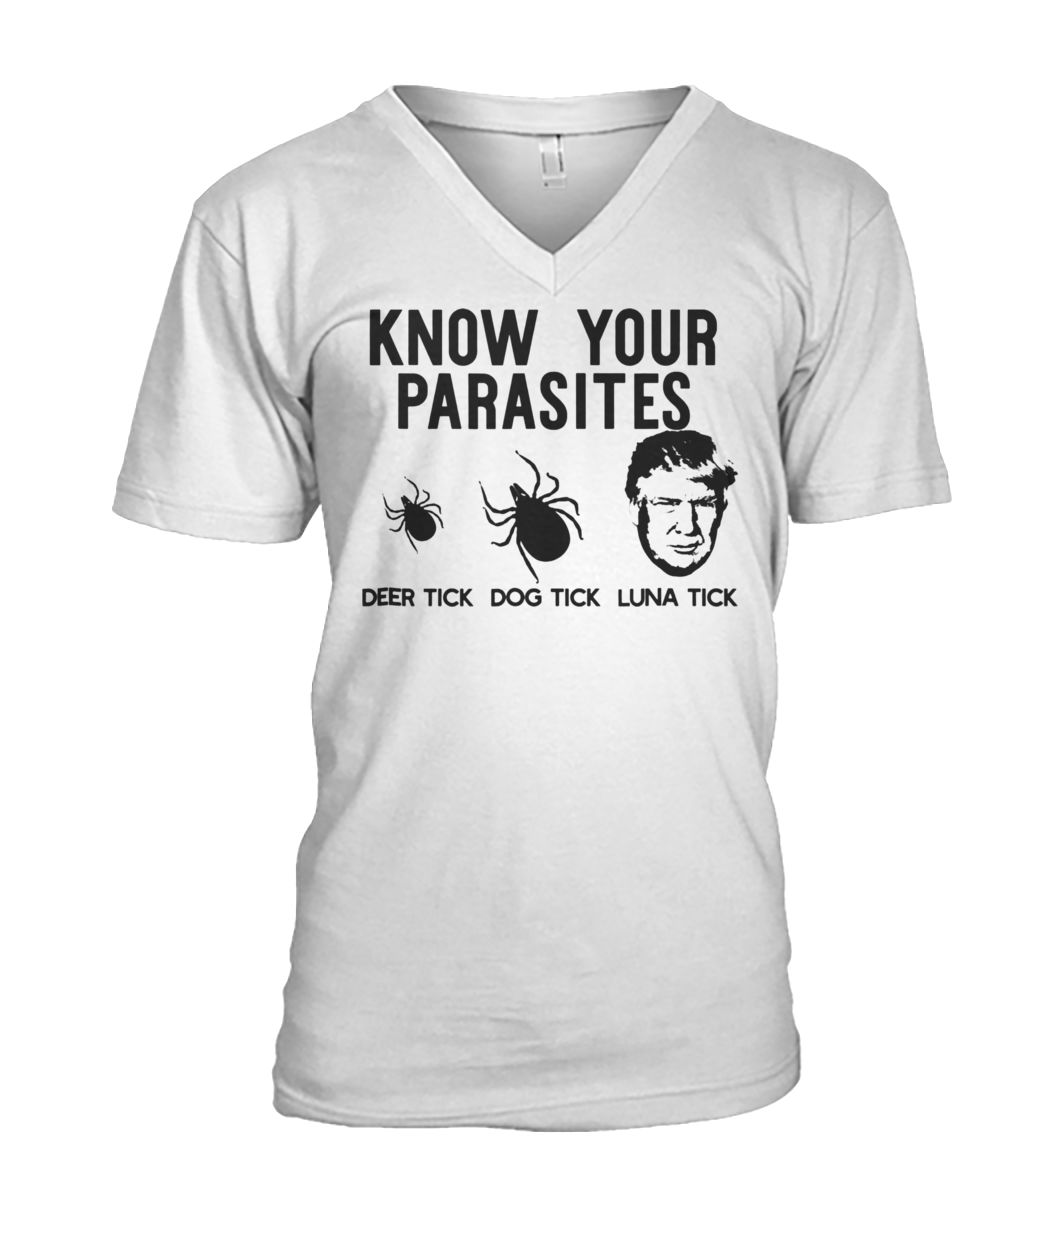 Know your parasites anti-trump af resist men's v-neck